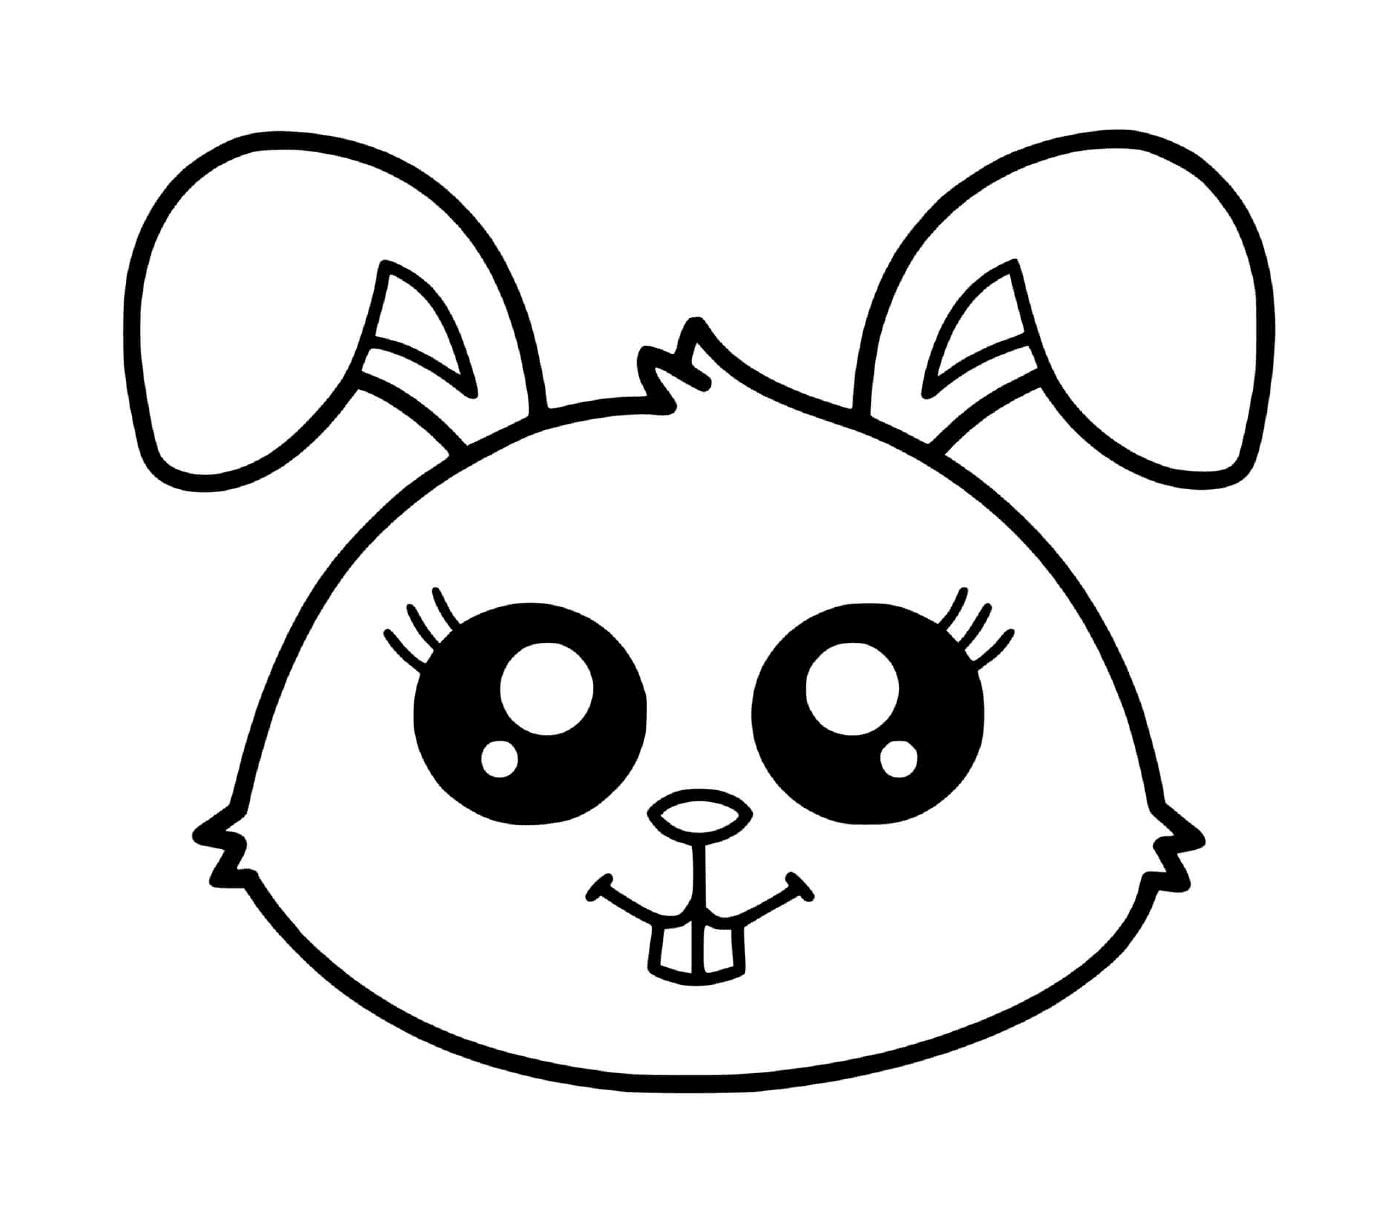   Un lapin mignon avec de grandes oreilles 